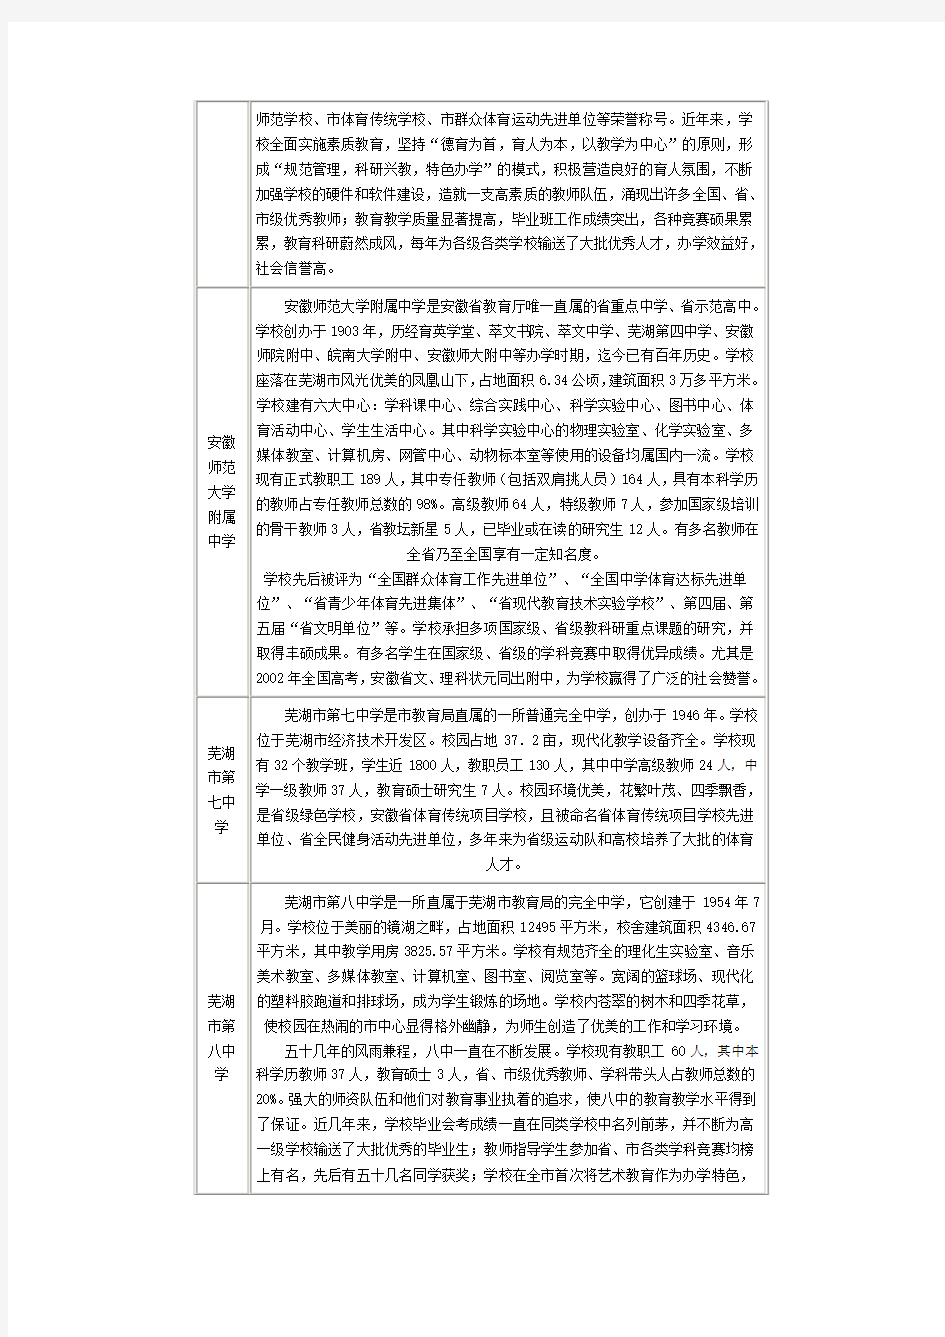 芜湖市高中一览表(含芜湖市、南陵县、芜湖县、繁昌县)